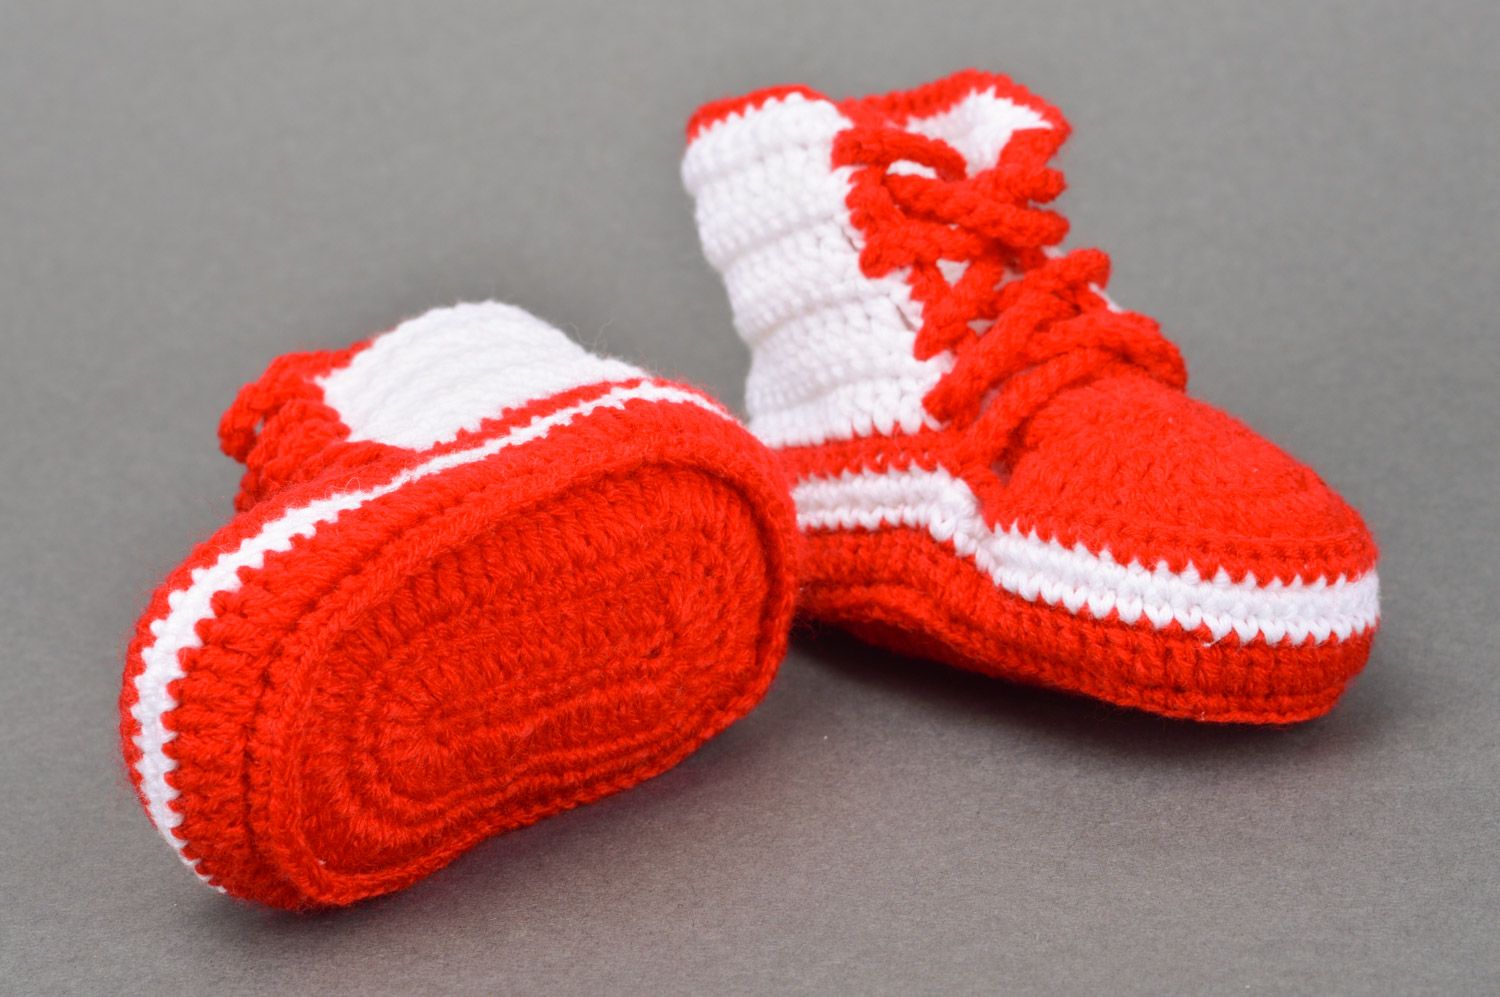 Chaussons tricotés au crochet rouge-blanc à lacets faits main pour bébé Baskets photo 5